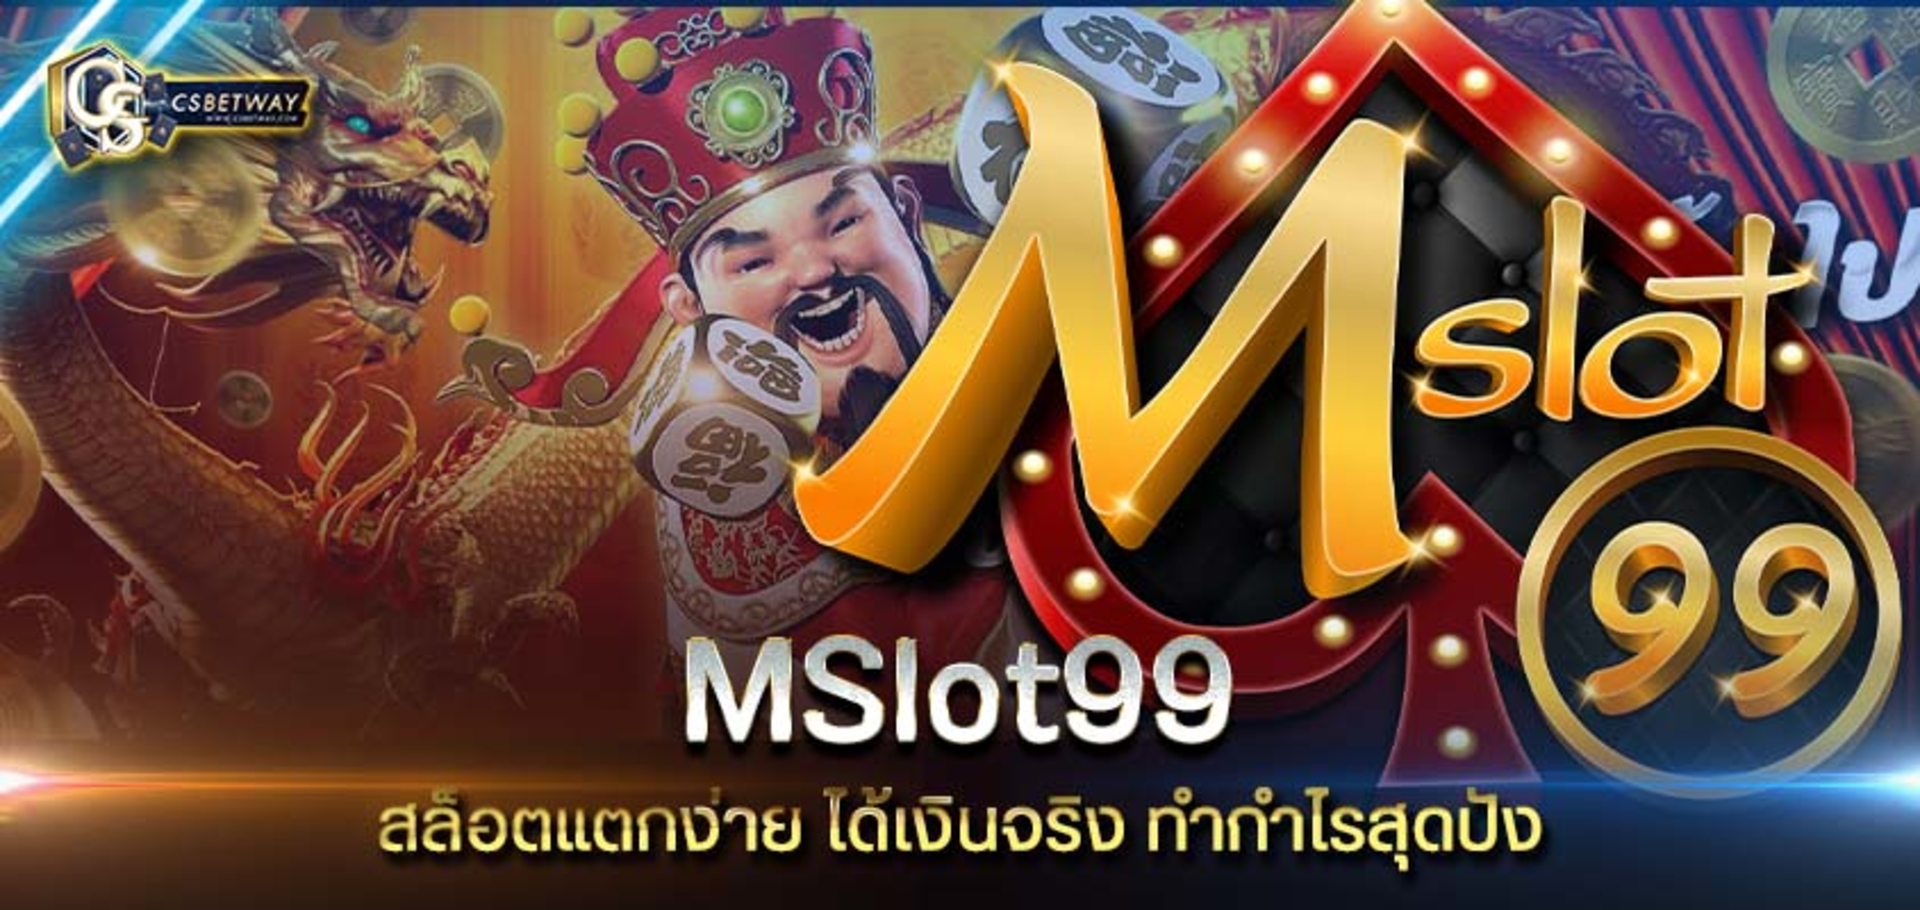 mslot99 เว็บสล็อตออนไลน์คุณภาพ สล็อตแตกง่าย ได้เงินจริง mslot99 ทำกำไรสุดปัง